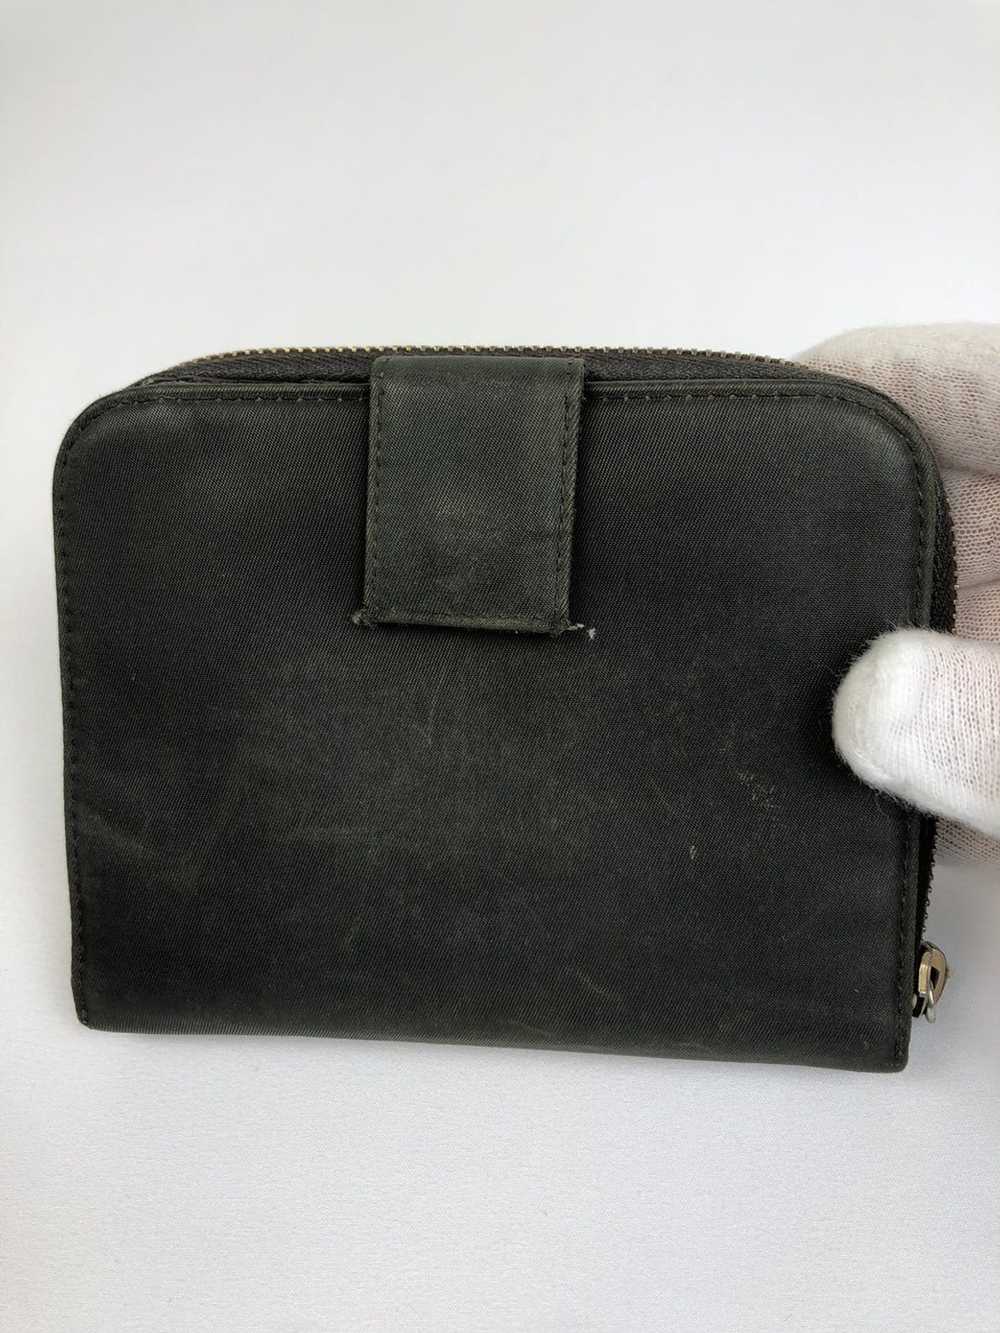 Prada Prada tessuto nylon zippy wallet - image 2